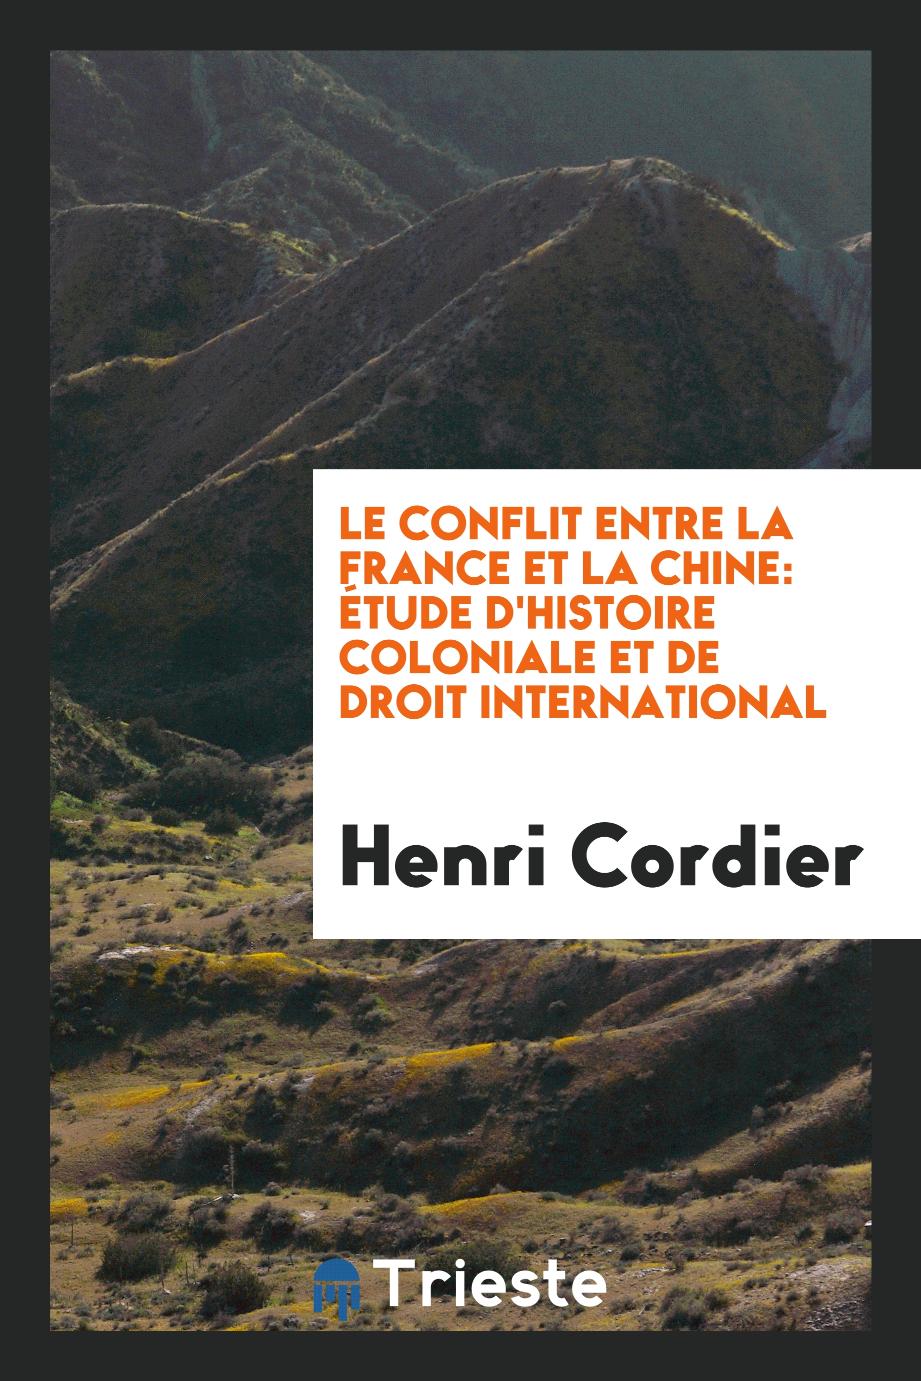 Henri Cordier - Le Conflit Entre la France et la Chine: Étude d'Histoire Coloniale et de Droit International